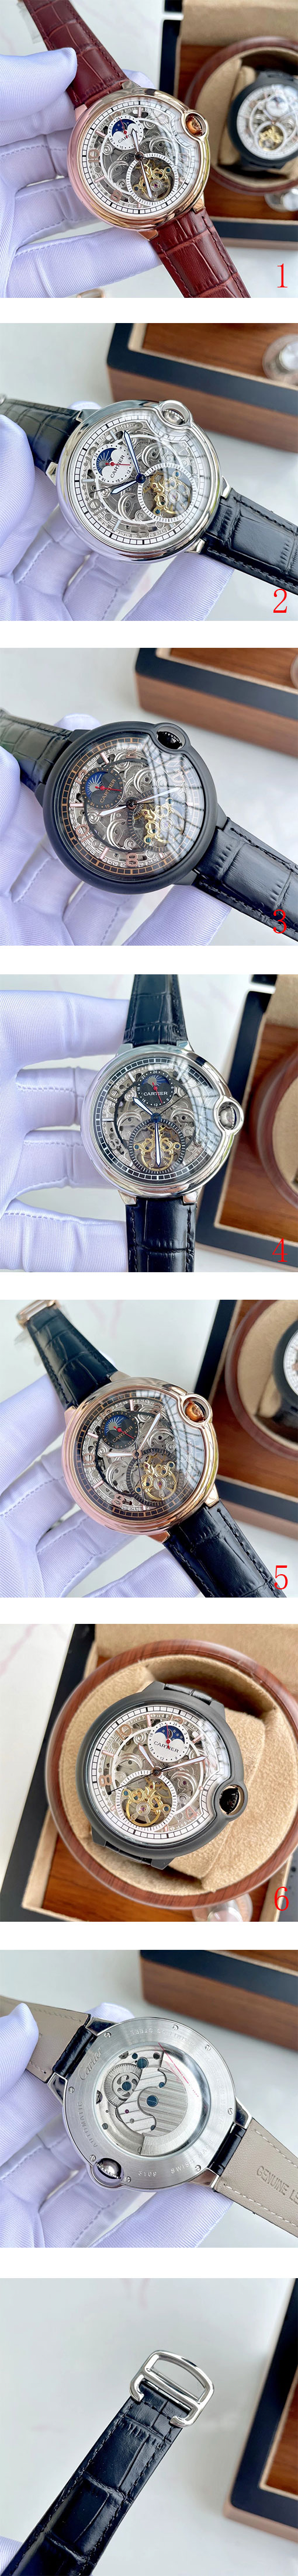 人気のカルティエコピー腕時計 ロトンド ドゥ 自動巻き メンズ